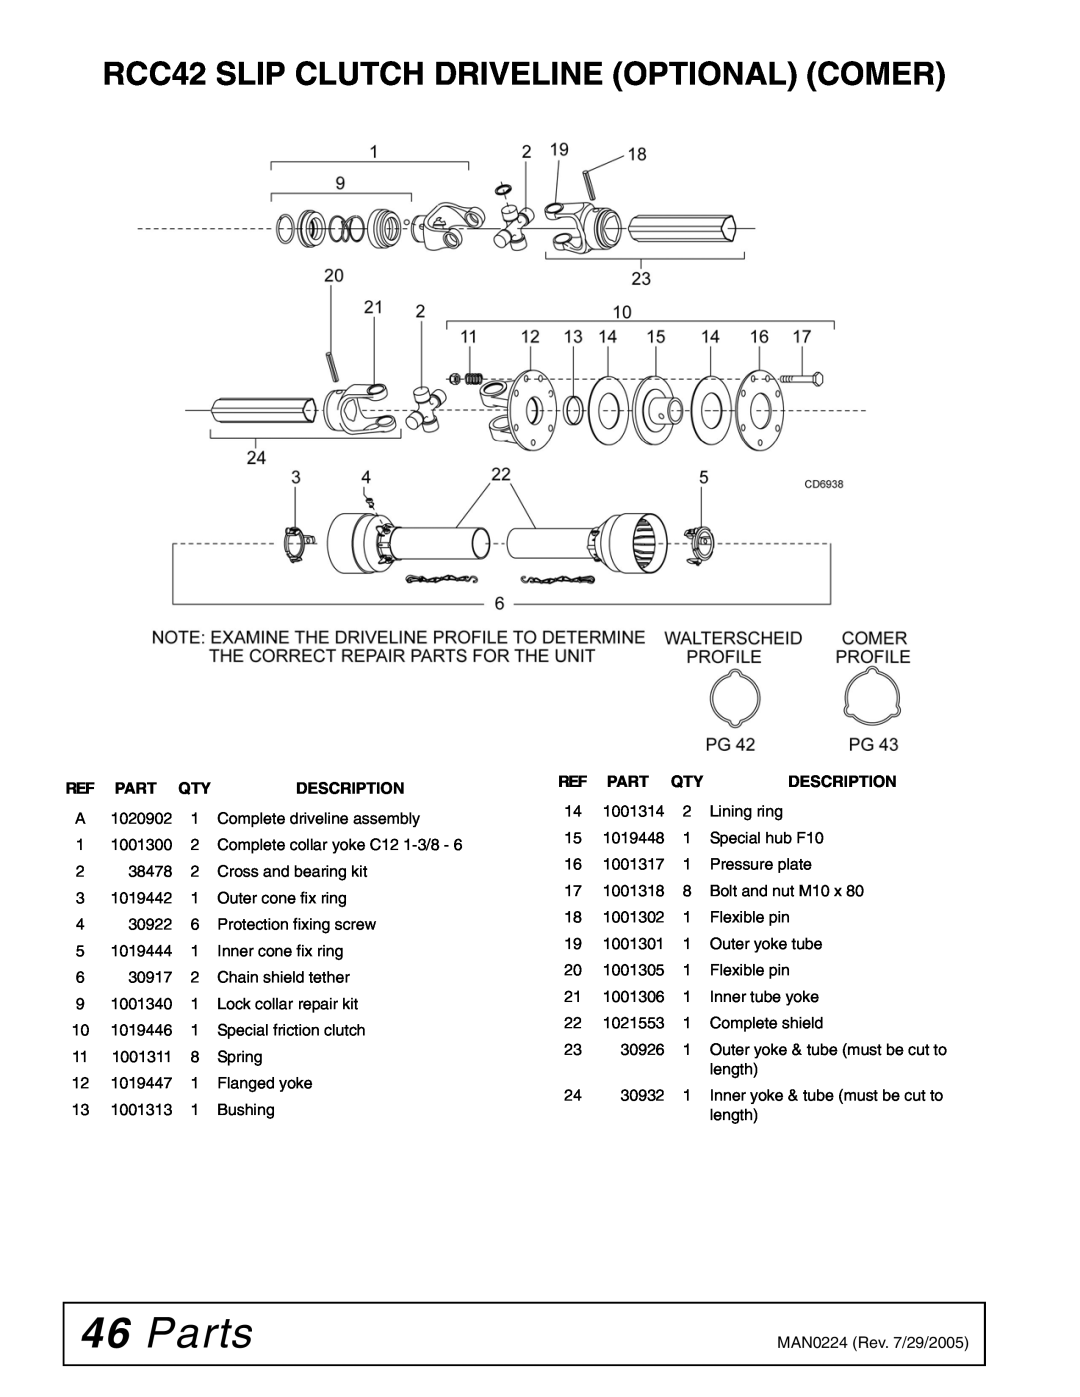 Woods Equipment manual Parts, RCC42 SLIP CLUTCH DRIVELINE OPTIONAL COMER, Description, Ref Part Qty 